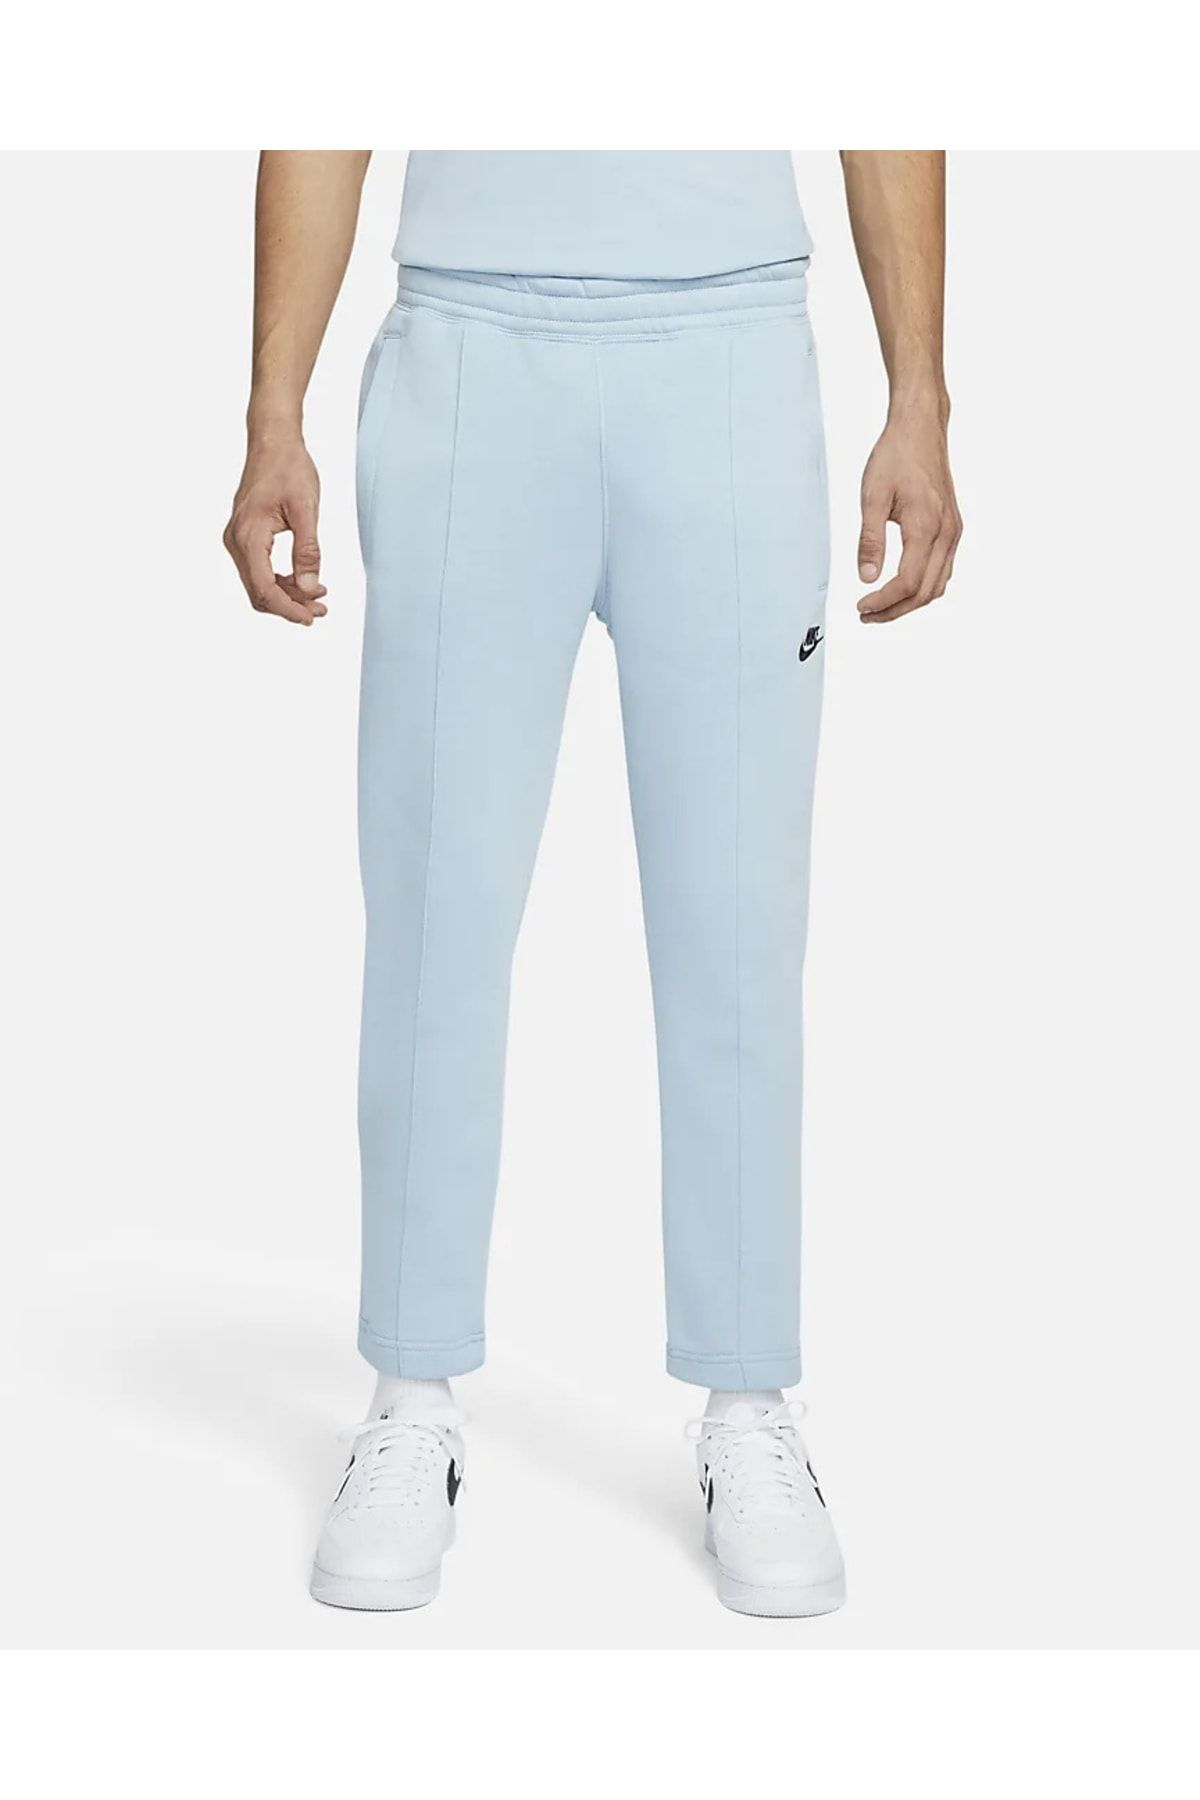 Men's Nike Sportswear Tech Fleece Jogger Pants in Cerulean Light Blue